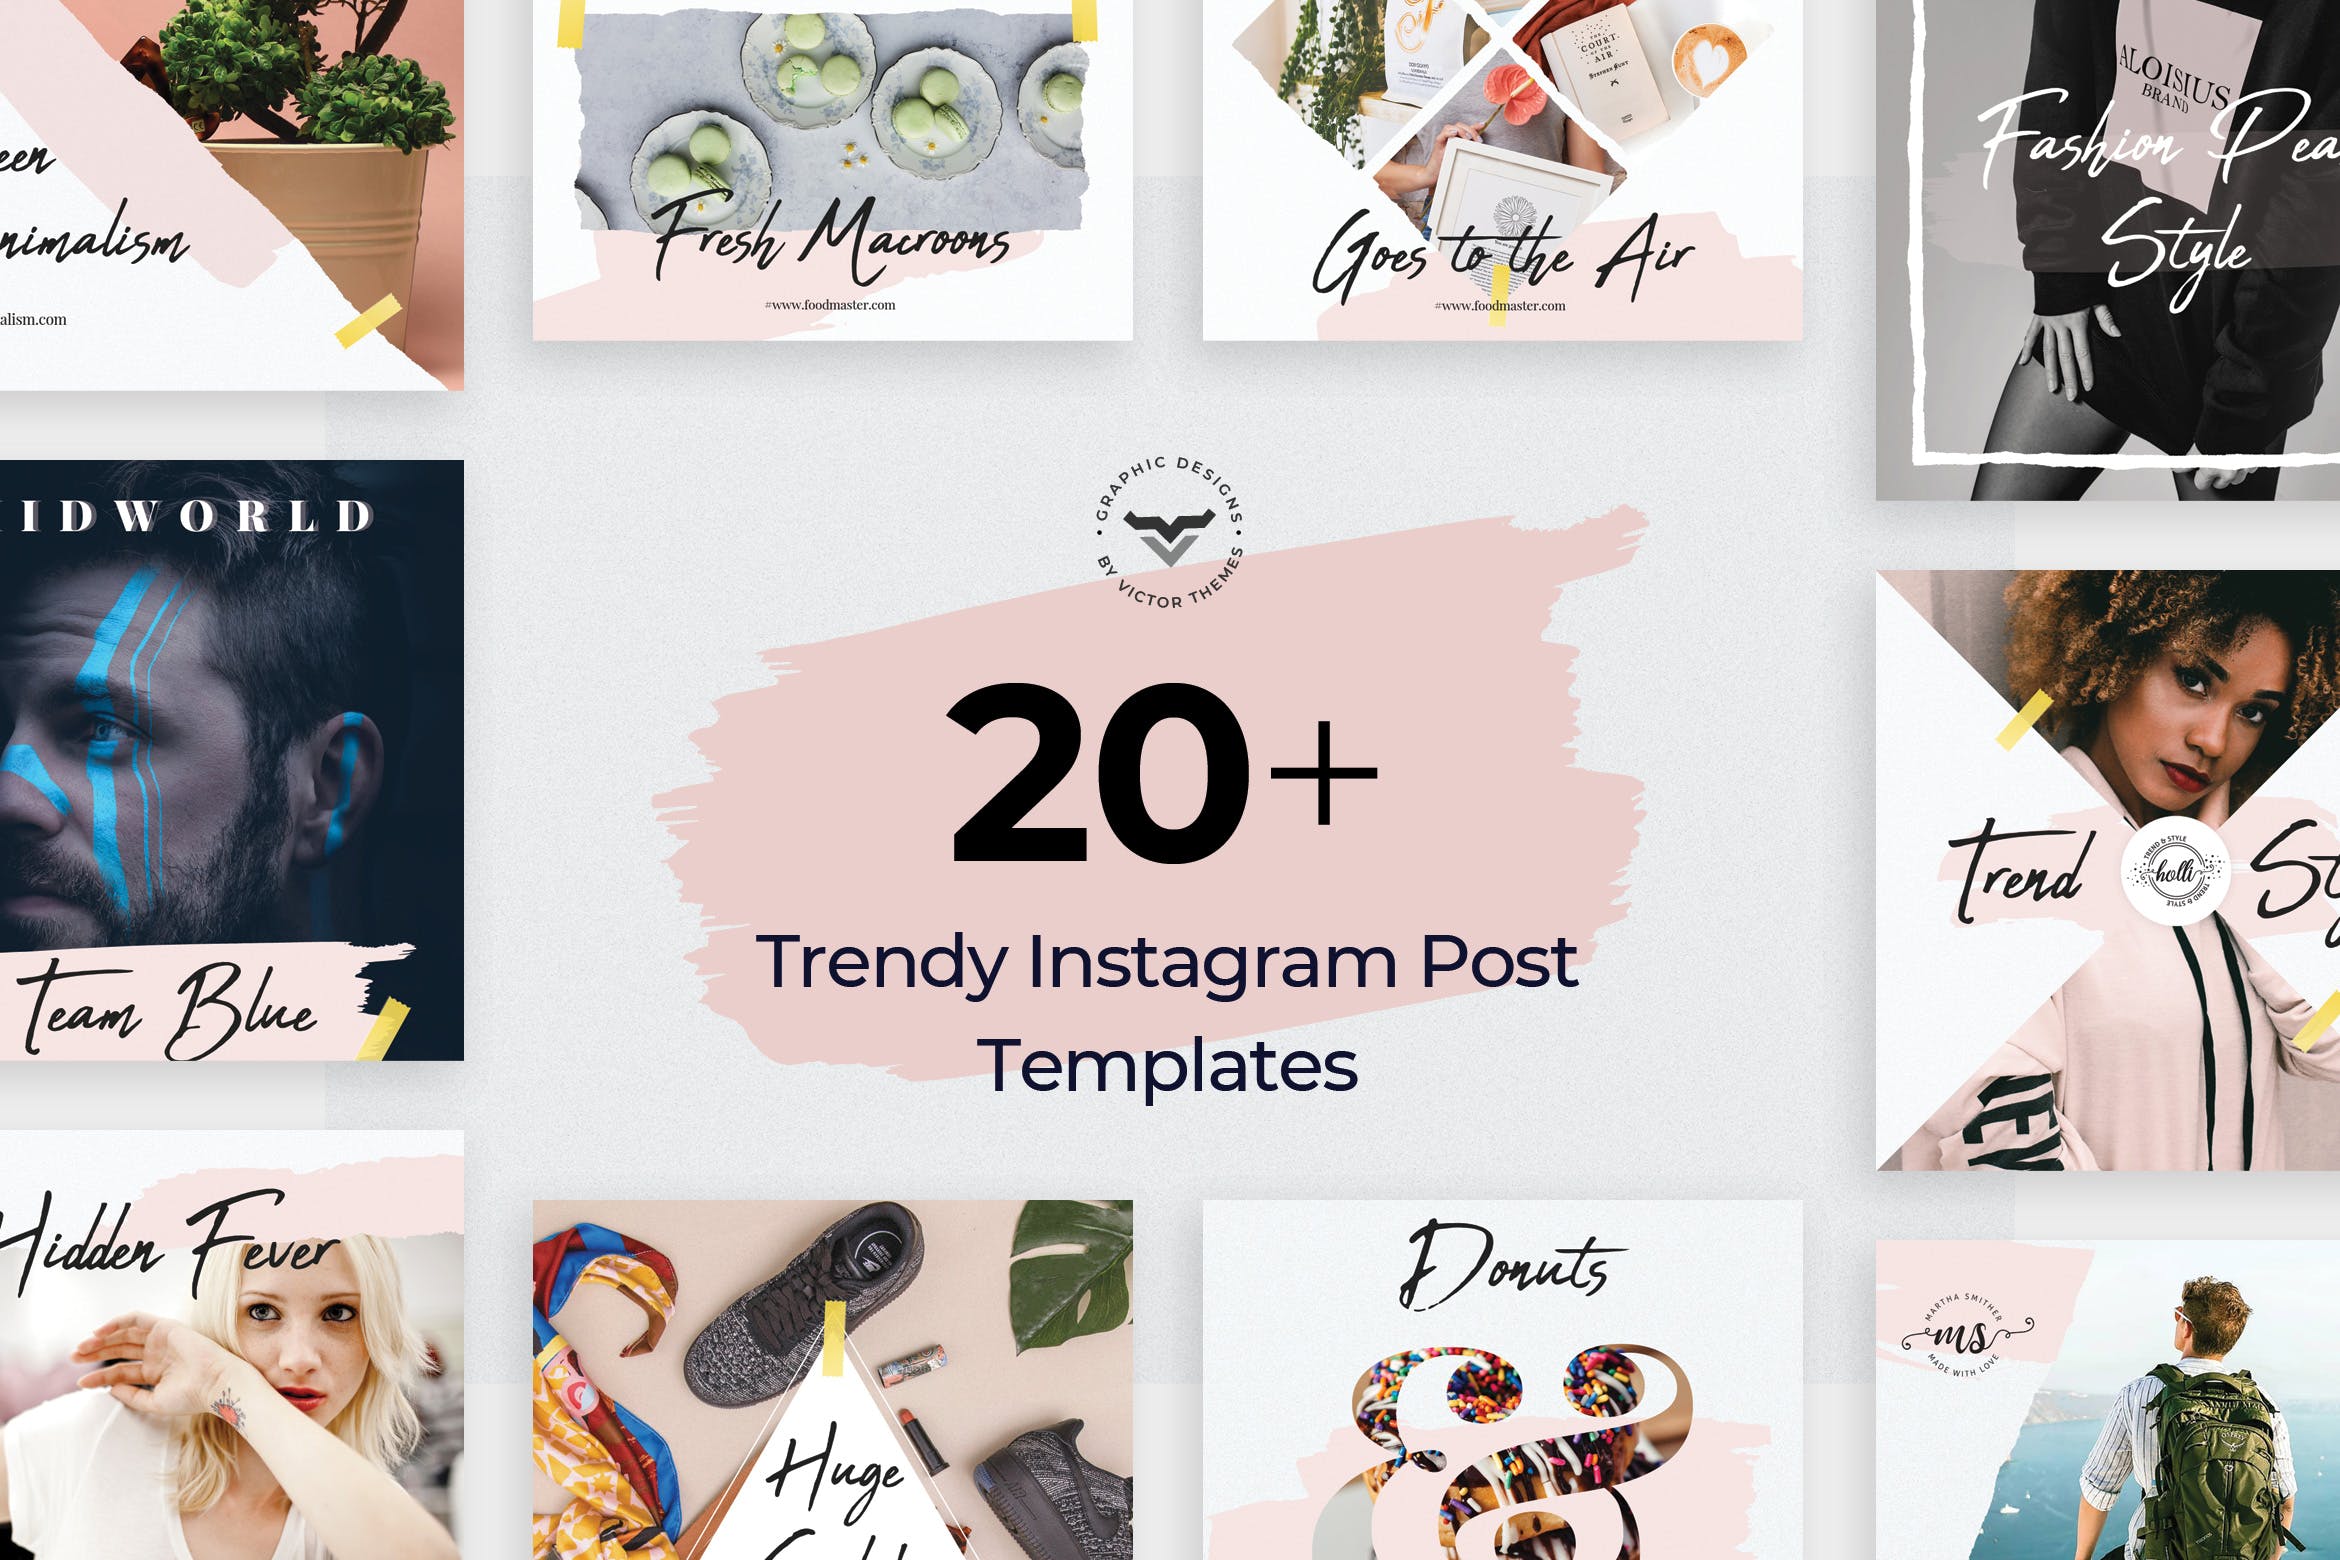 20+创意便利贴设计风格Instagram社交贴图模板非凡图库精选 Instagram Post Templates插图